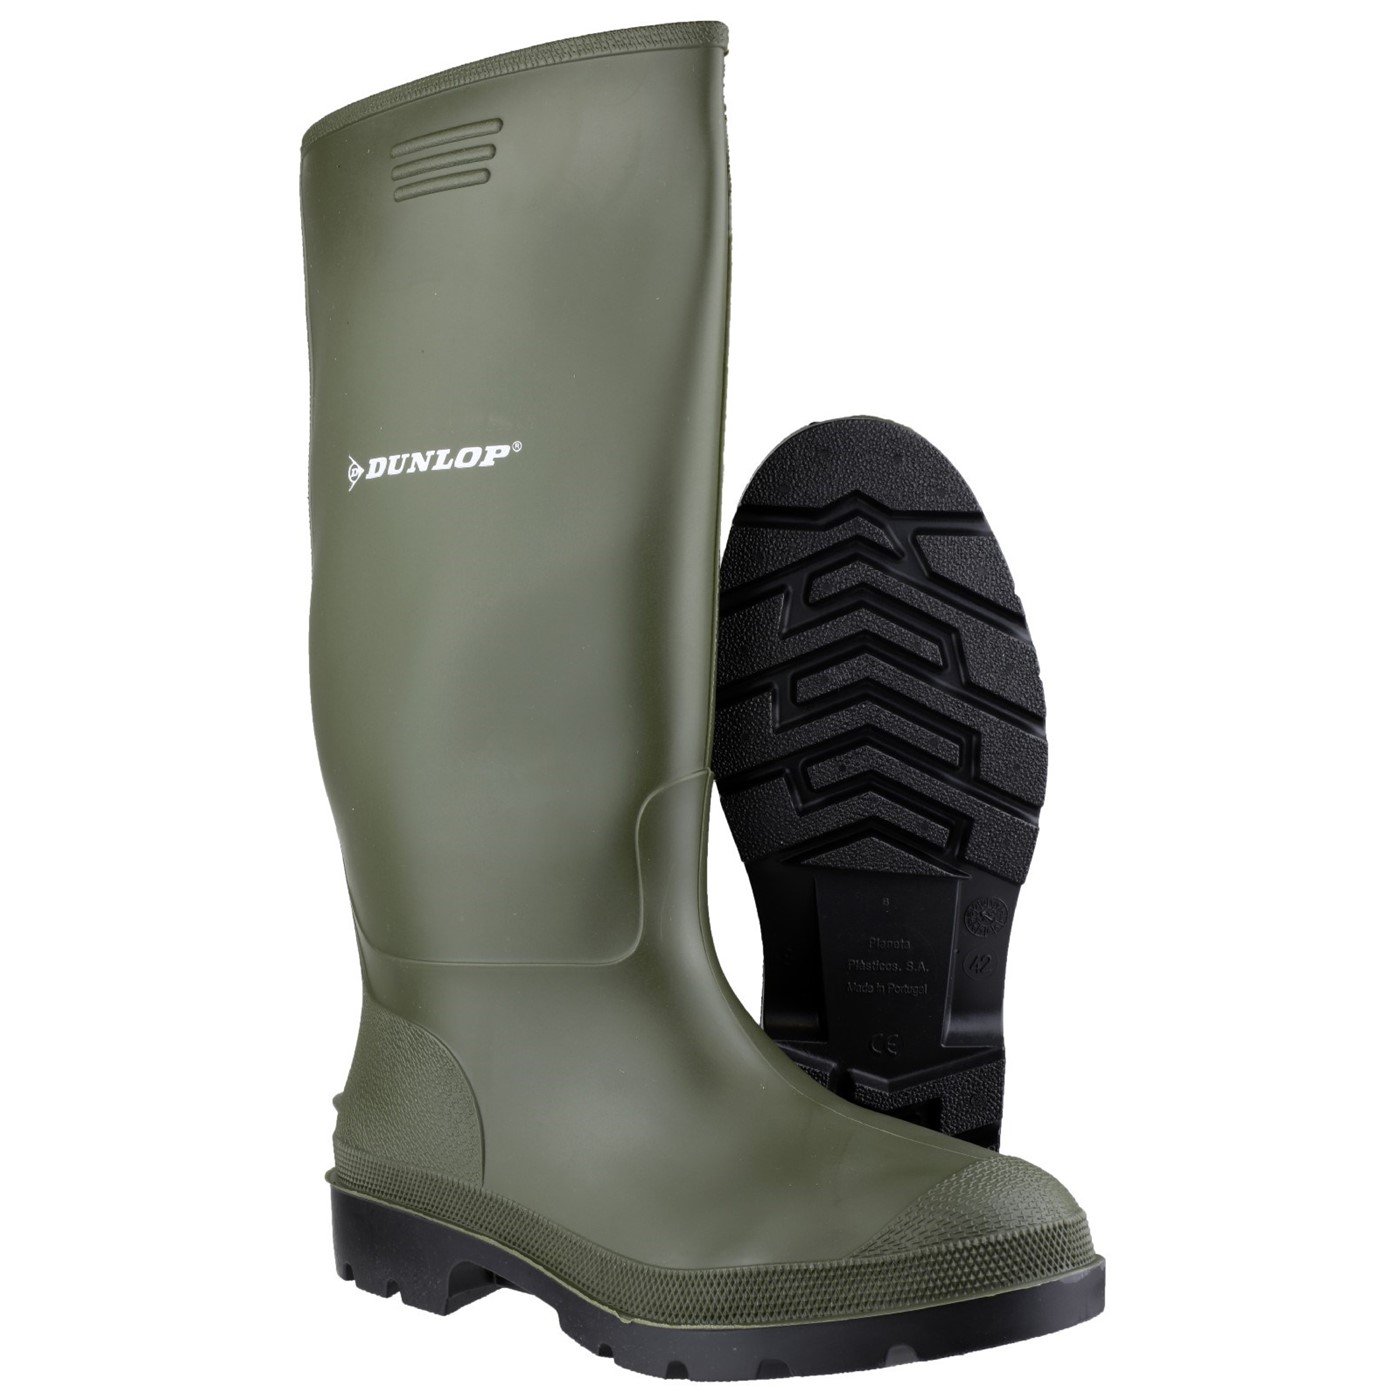 Dunlop Pricemaster Boot, Green, Size 7(41)